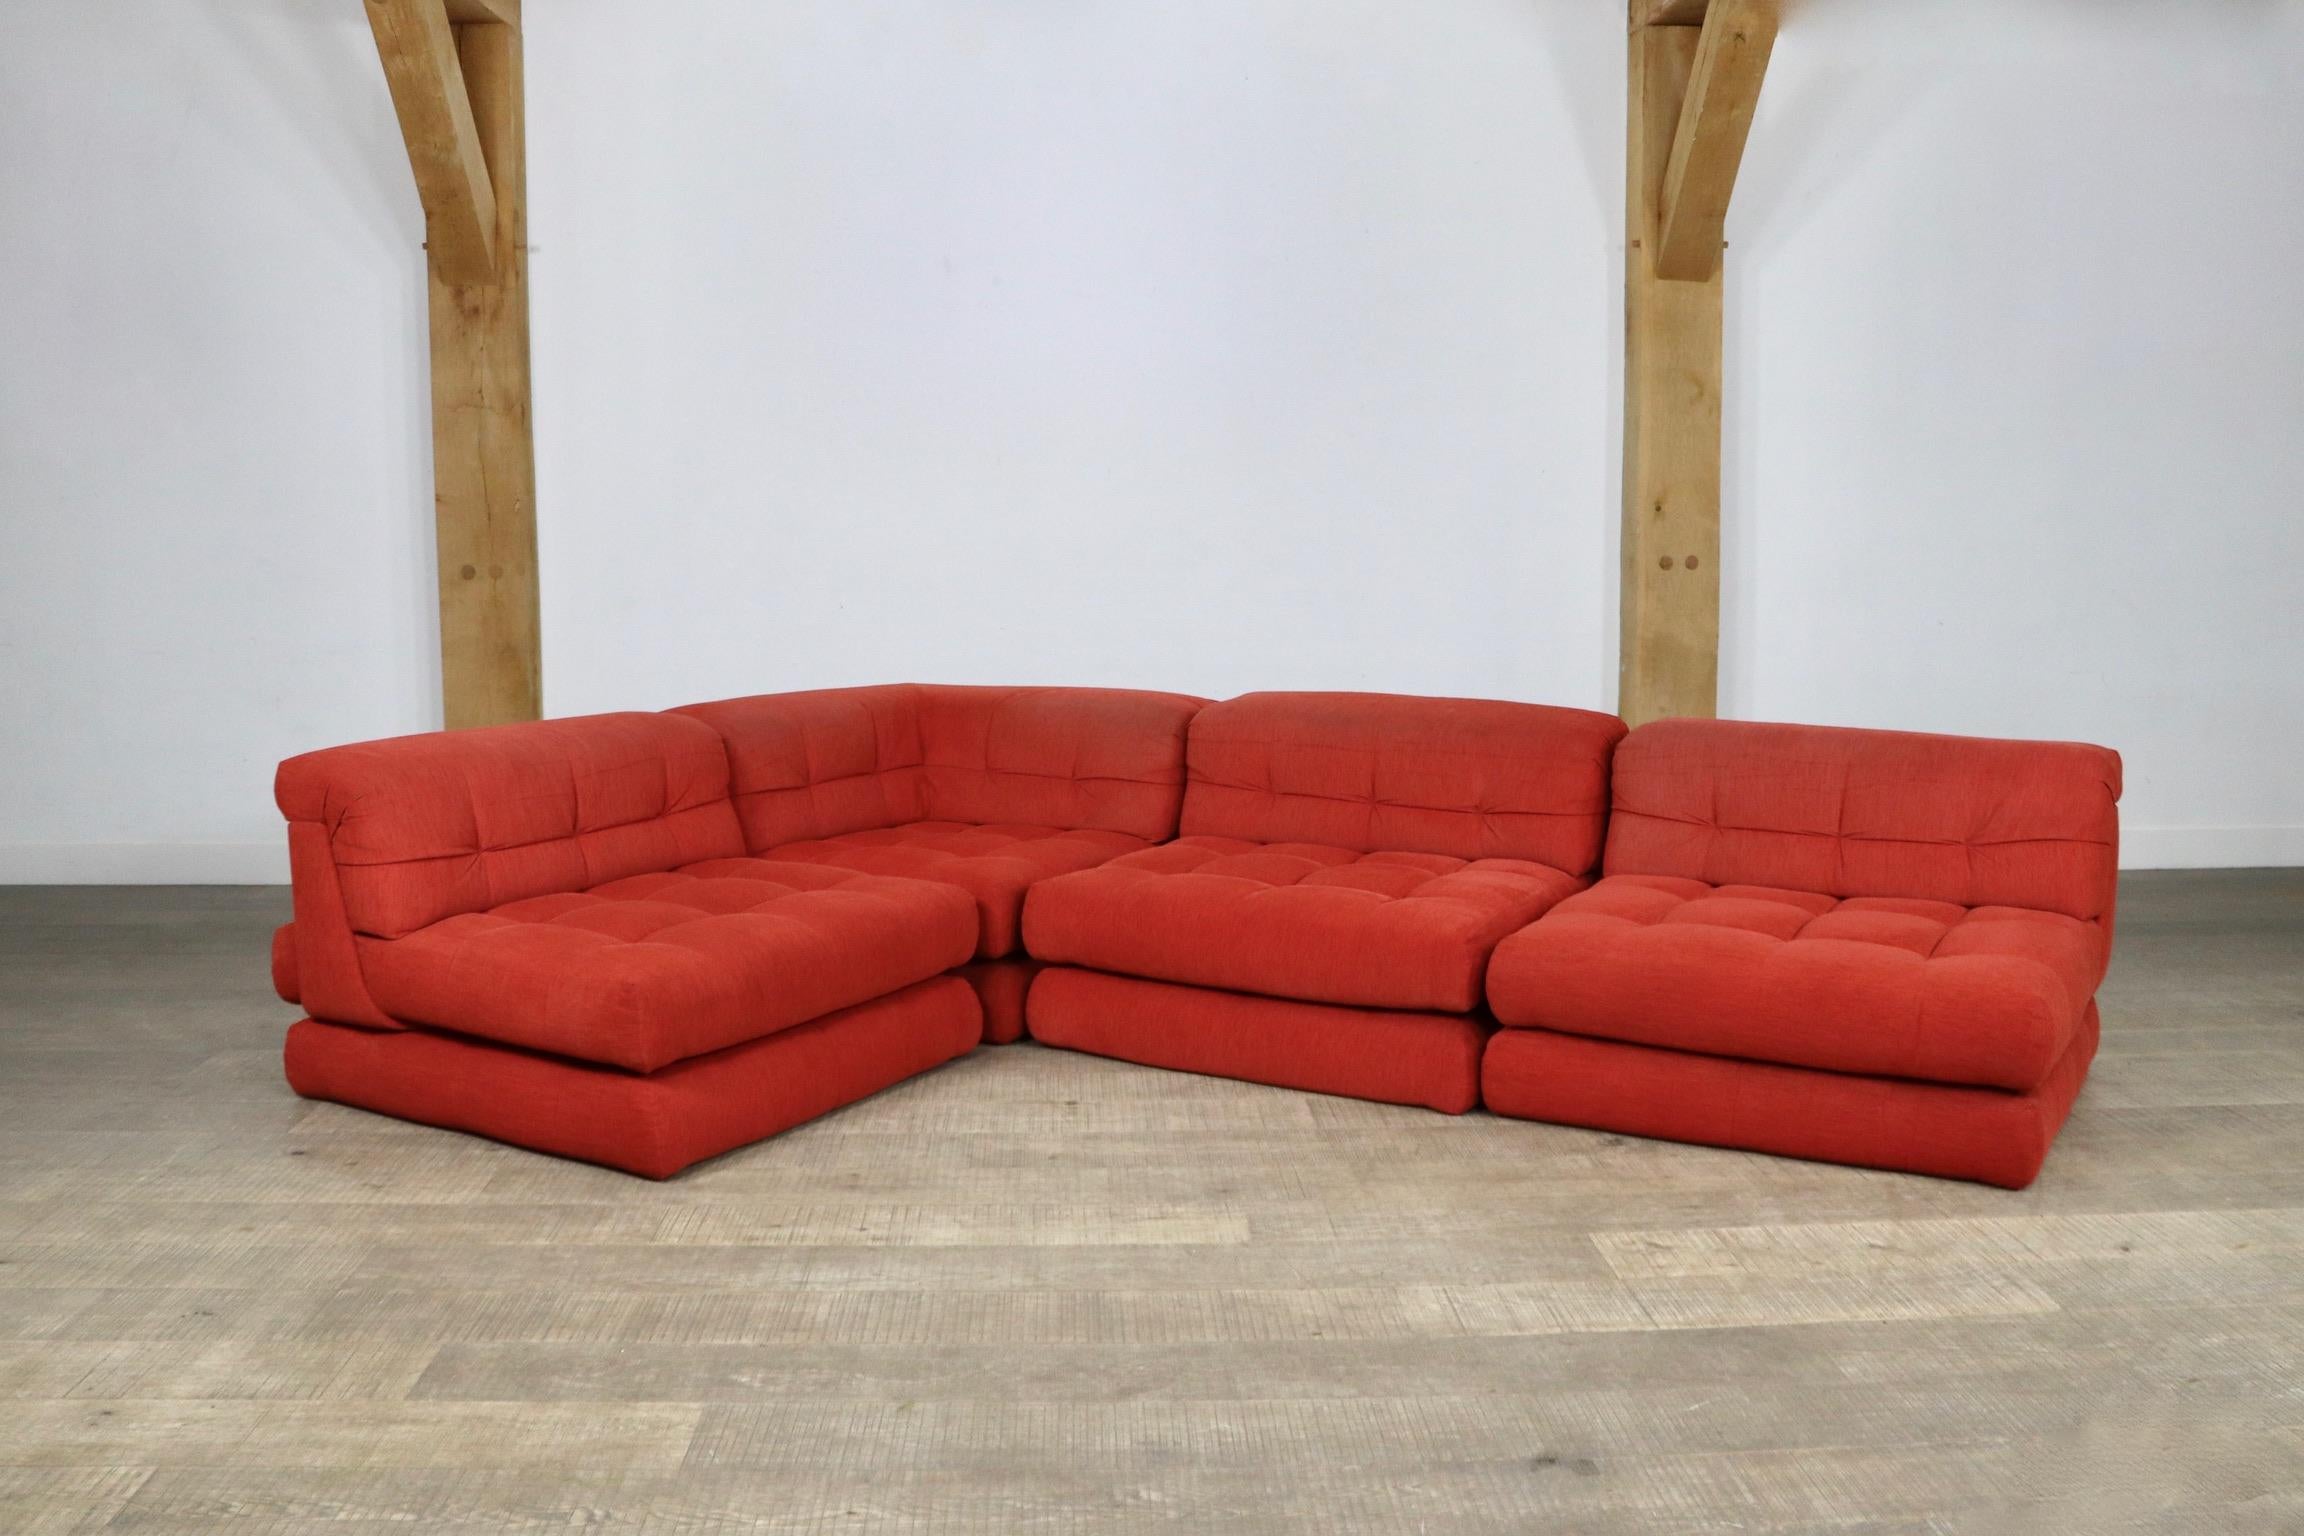 Incroyable canapé modulaire Mah Jong de Roche Bobois, première édition des années 1970 par Hans Hopfer et Philippe Roche, dans sa tapisserie originale en velours rouge. Dans les années 1970, Hans Hopfer a créé le canapé de salon Mah Jong, le design